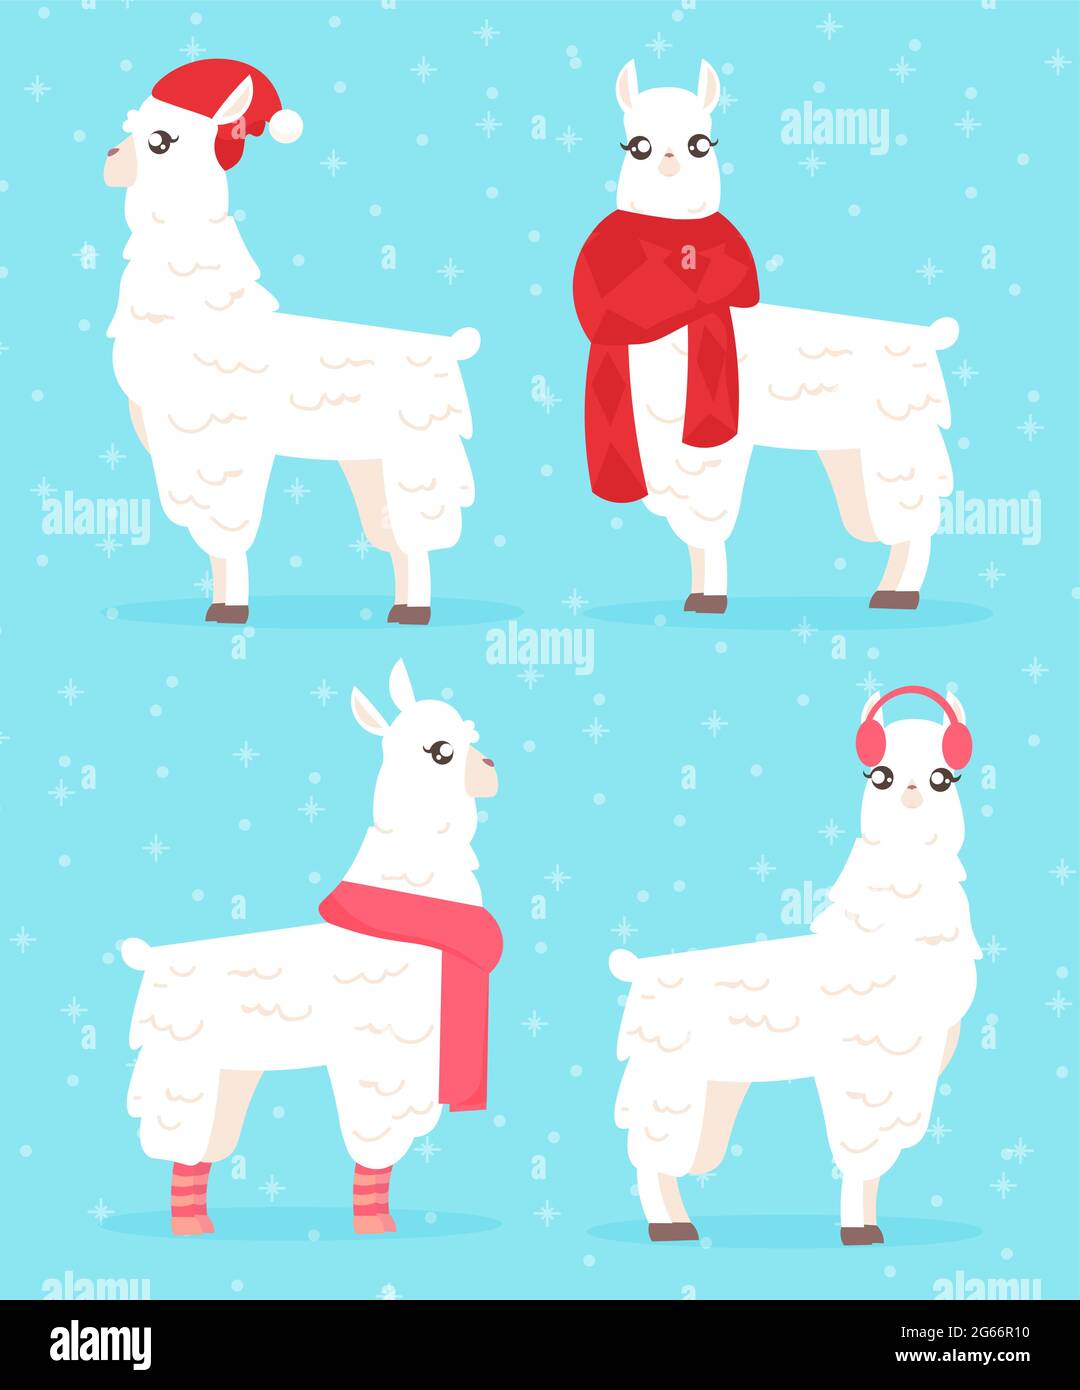 Vektor-Illustration von Winter-Stil Lama. Alpaca in Winterkleidung auf blauem Hintergrund. Weihnachtskarte Konzept mit Lama in Hut und Schal Stock Vektor